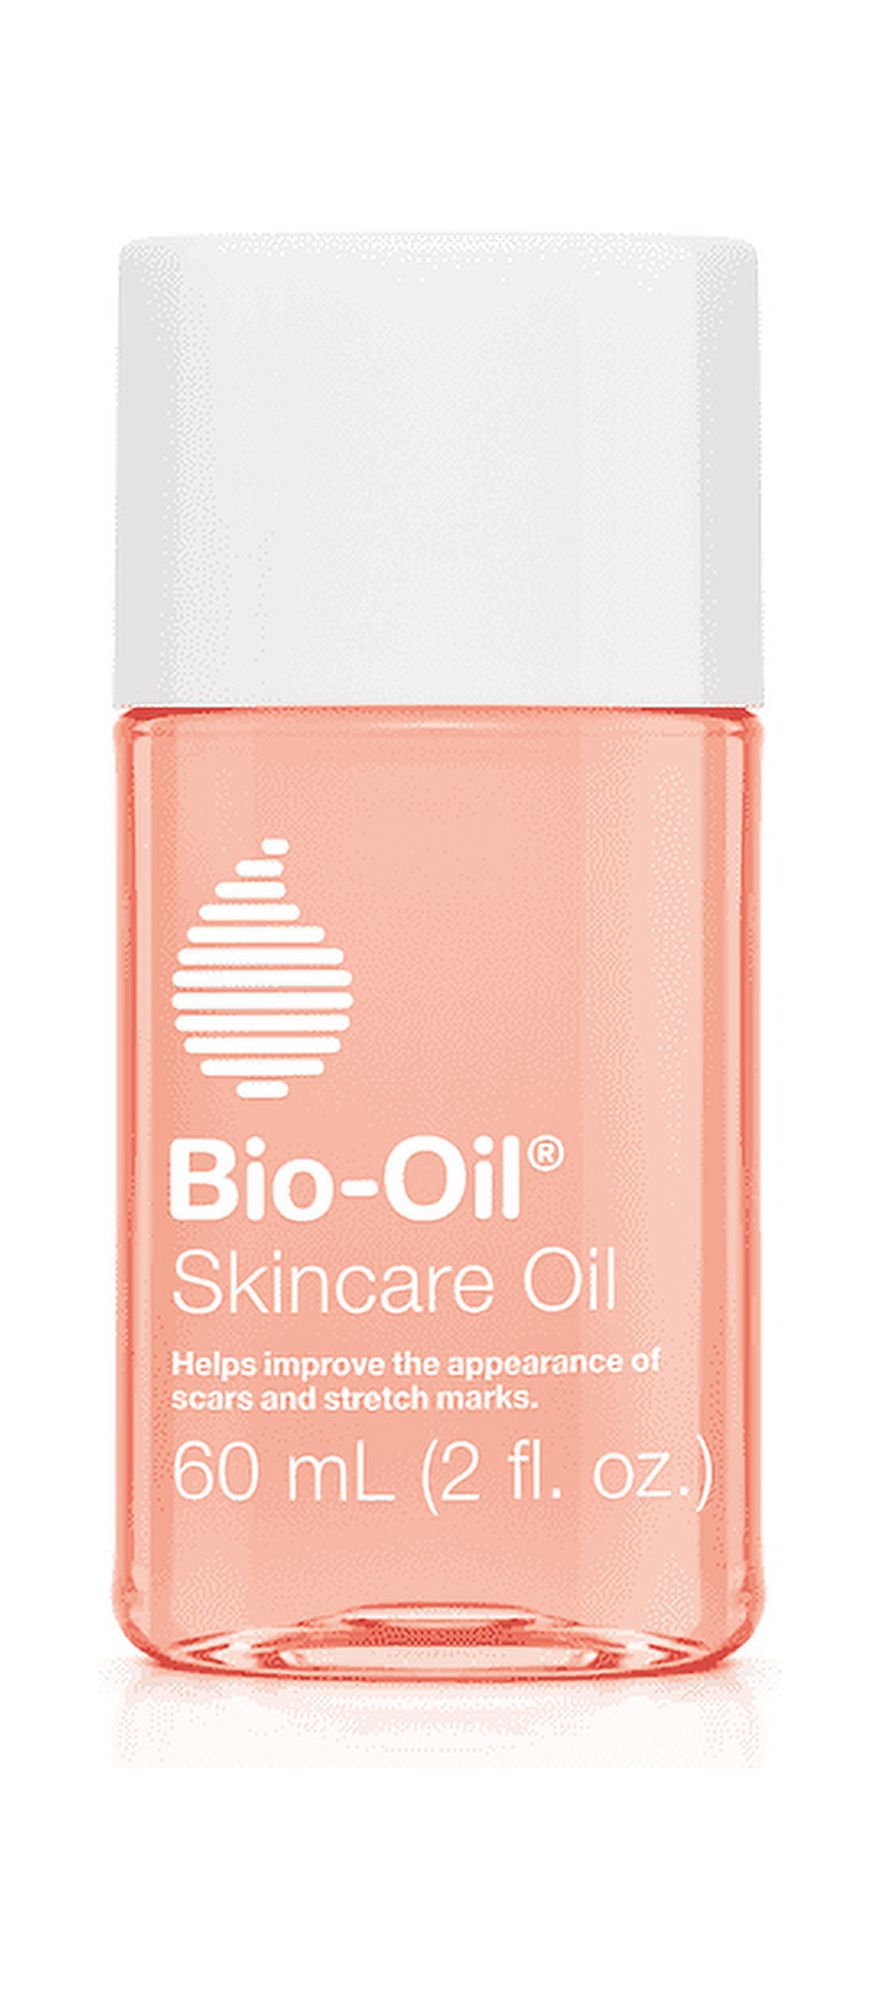 Bio-Oil Skincare Oil, Body Oil & Dark Spot Corrector for Scars and Stretchmarks, 2 fl oz - image 2 of 12